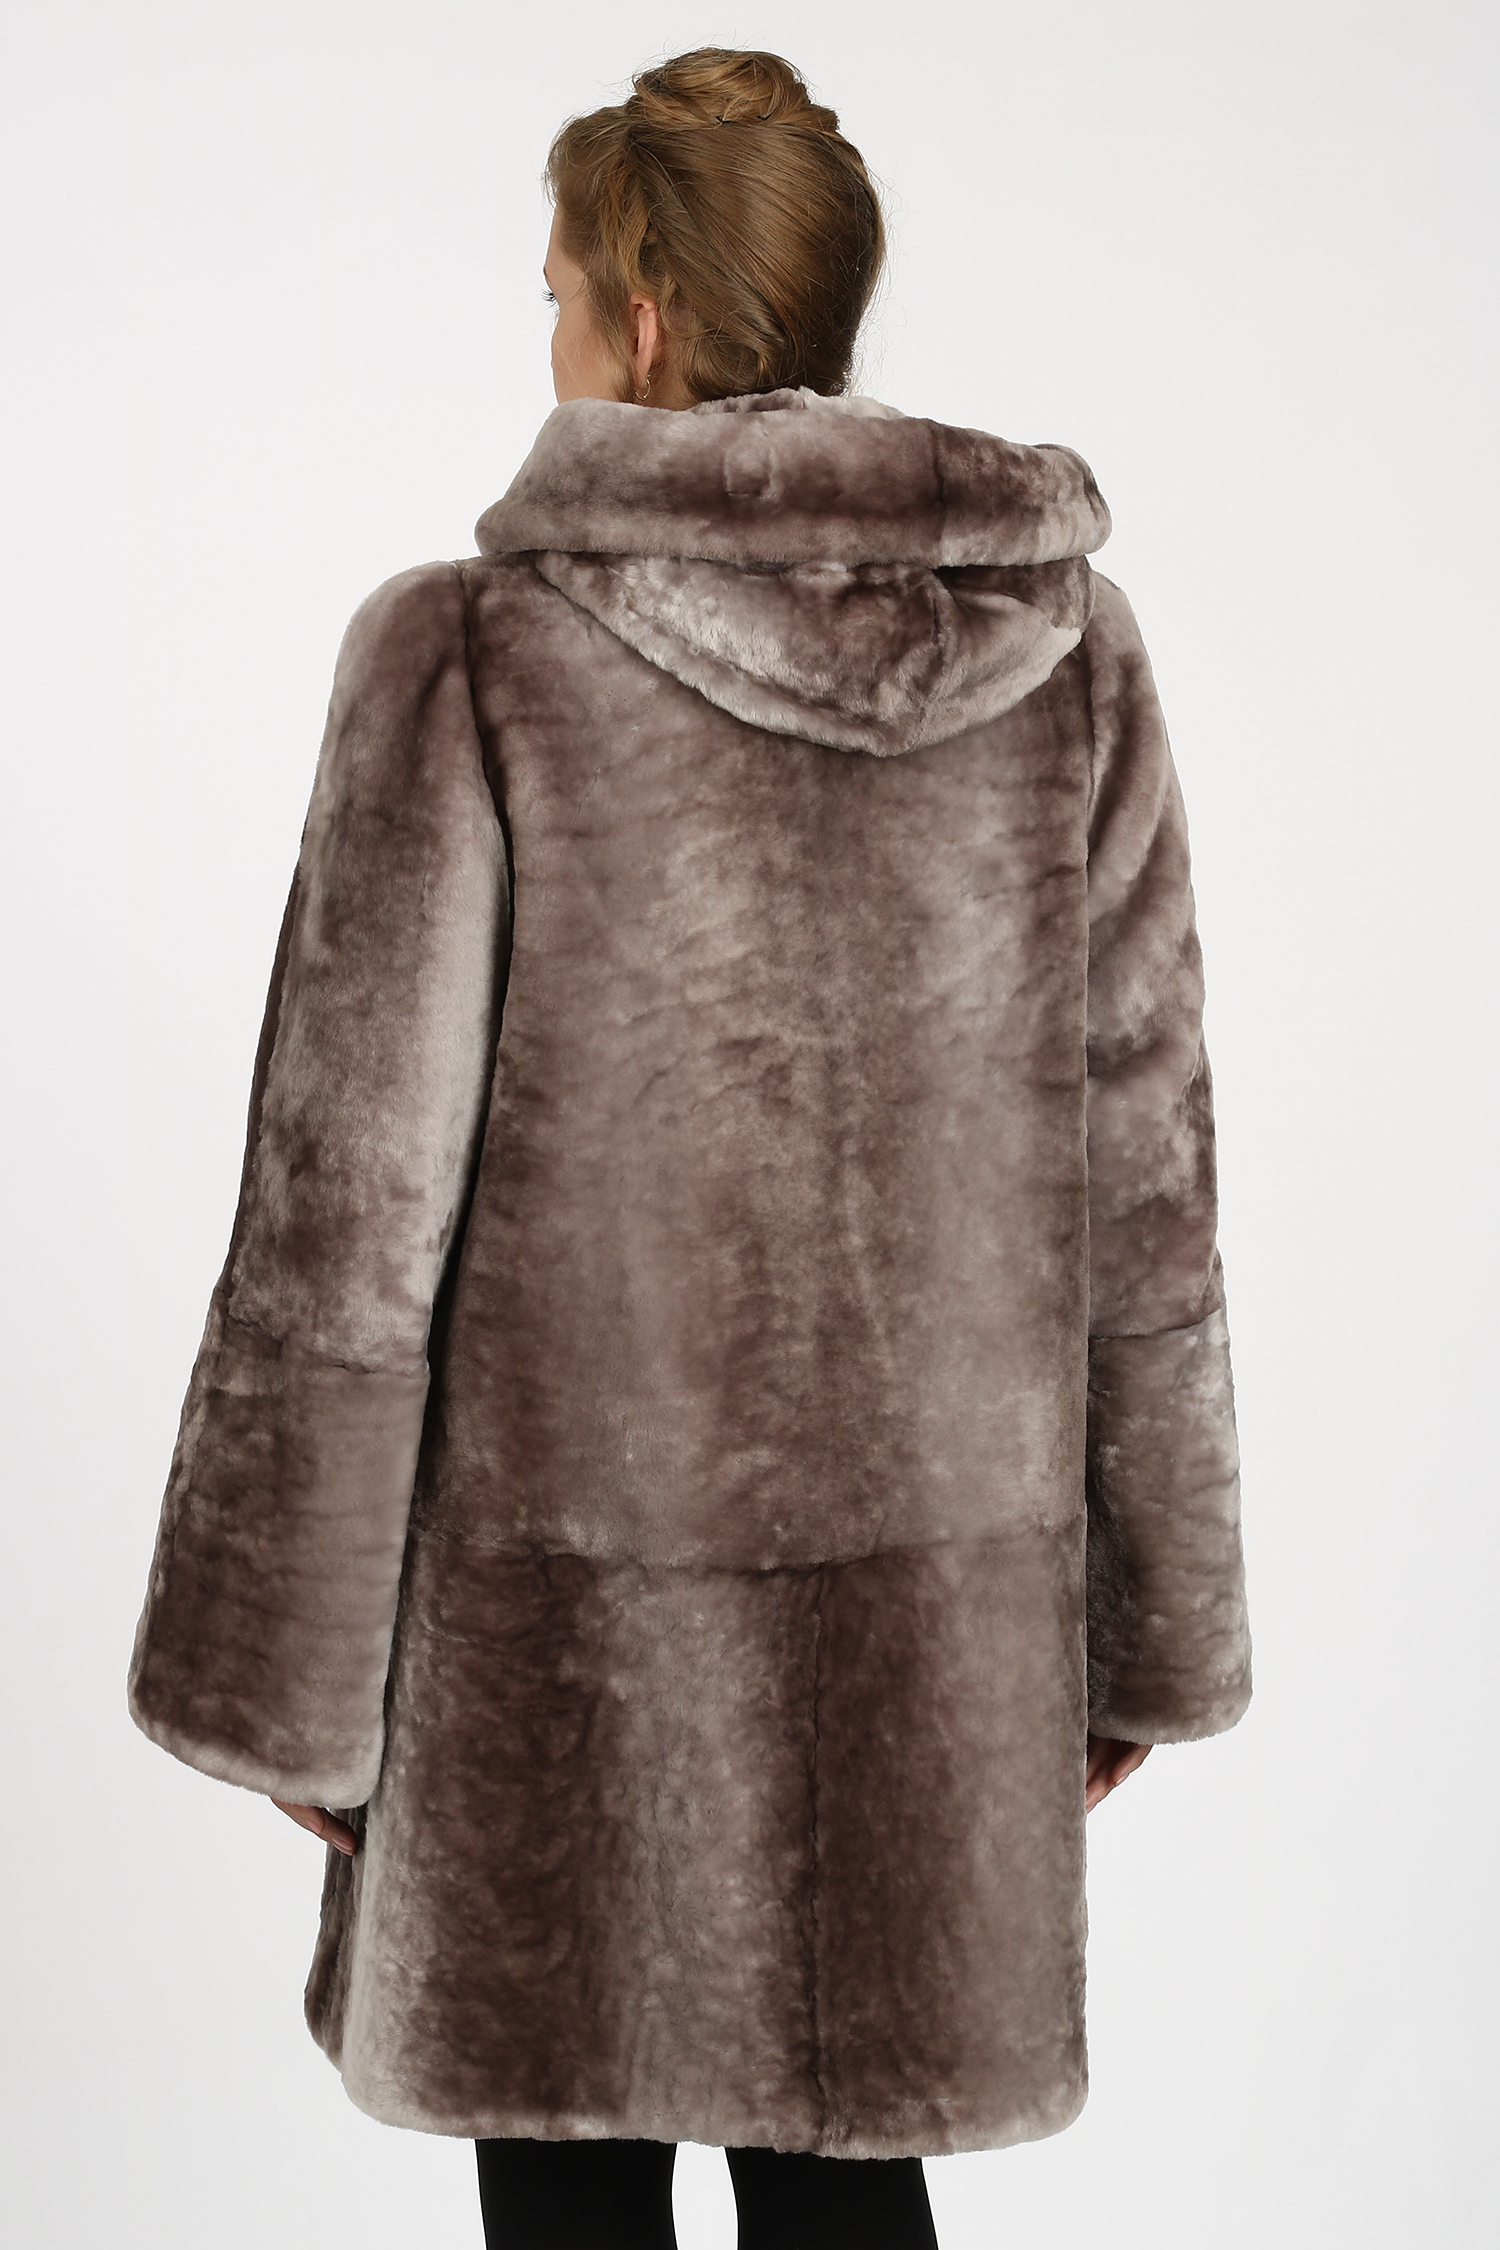 Женская кожаная куртка из натуральной кожи на меху с капюшоном, отделка блюфрост